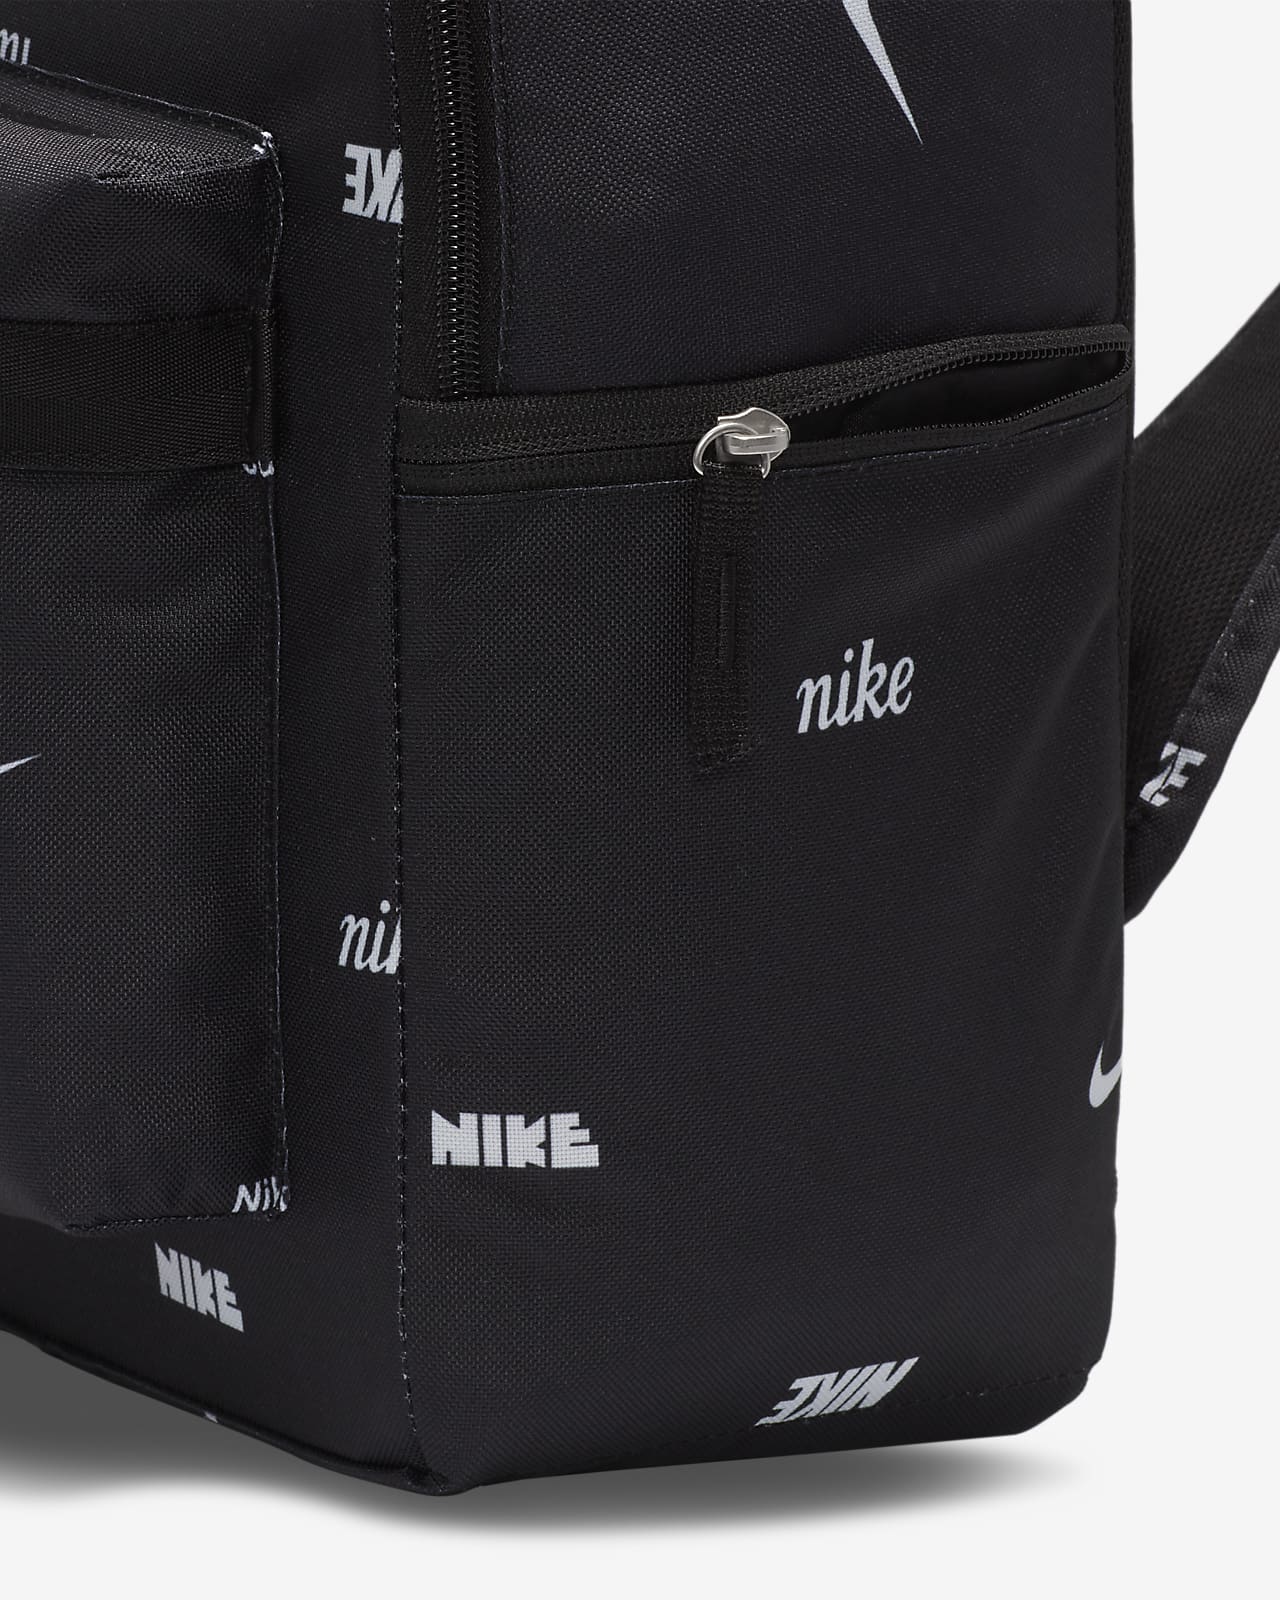 Nike - Sacs à dos pour homme - FARFETCH